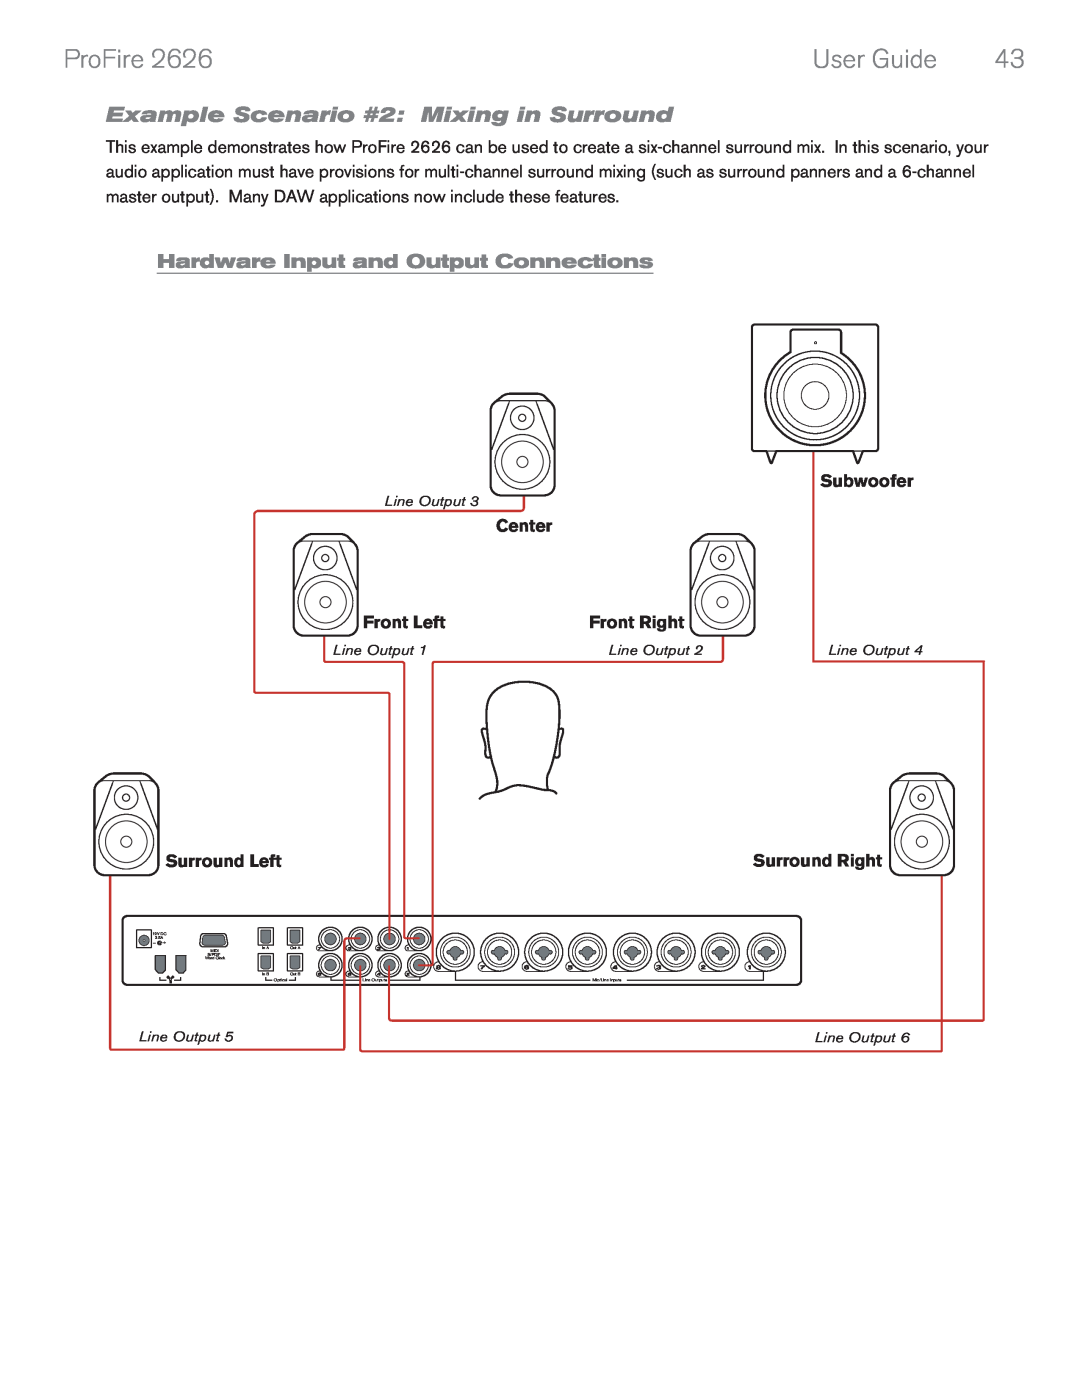 M-Audio 2626 manual Example Scenario #2: Mixing in Surround, Center, Subwoofer, Surround Left, Surround Right, ProFire 